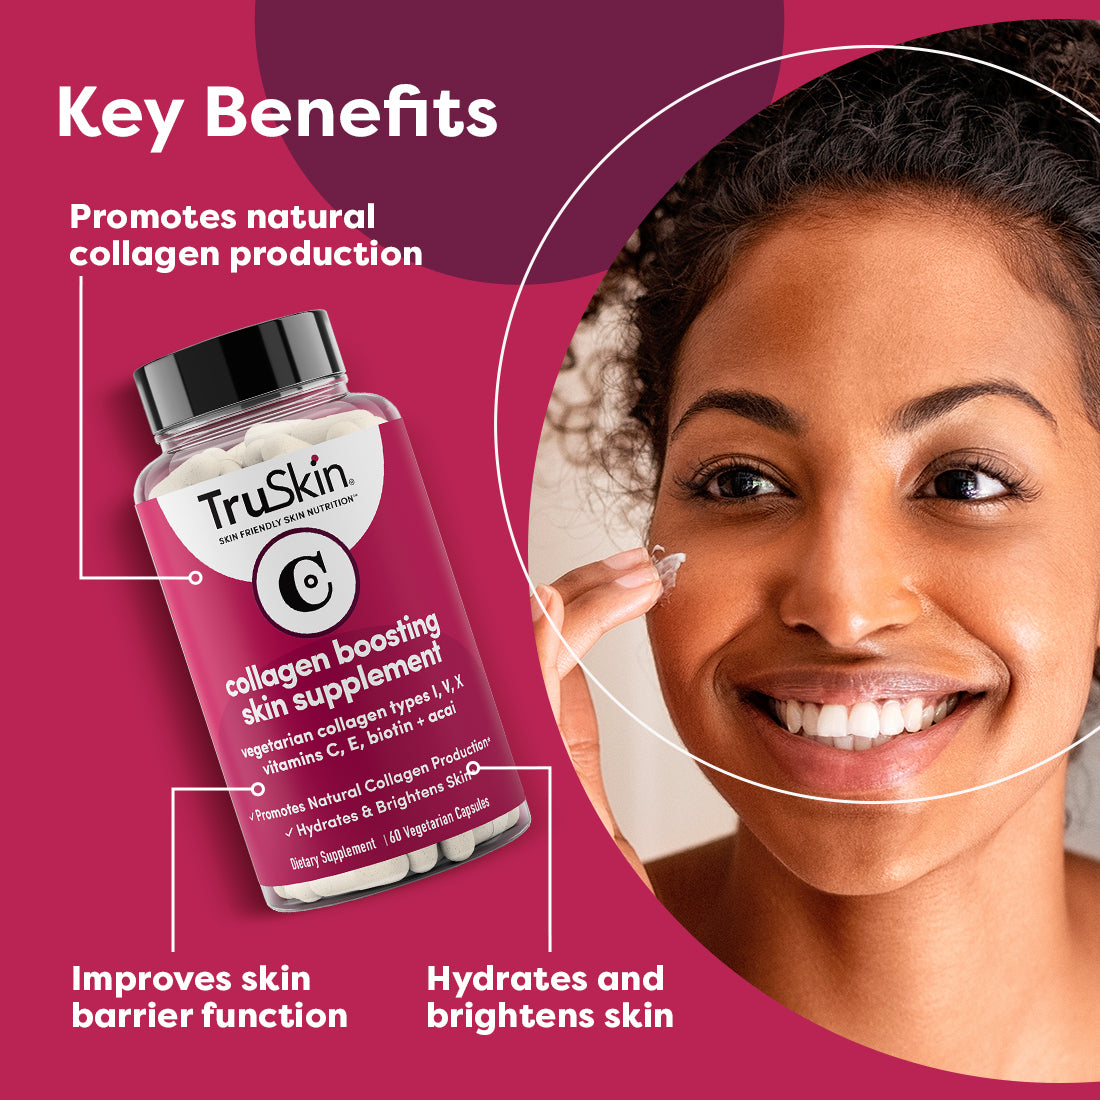 NEW TruSkin Collagen Boosting Skin Supplement